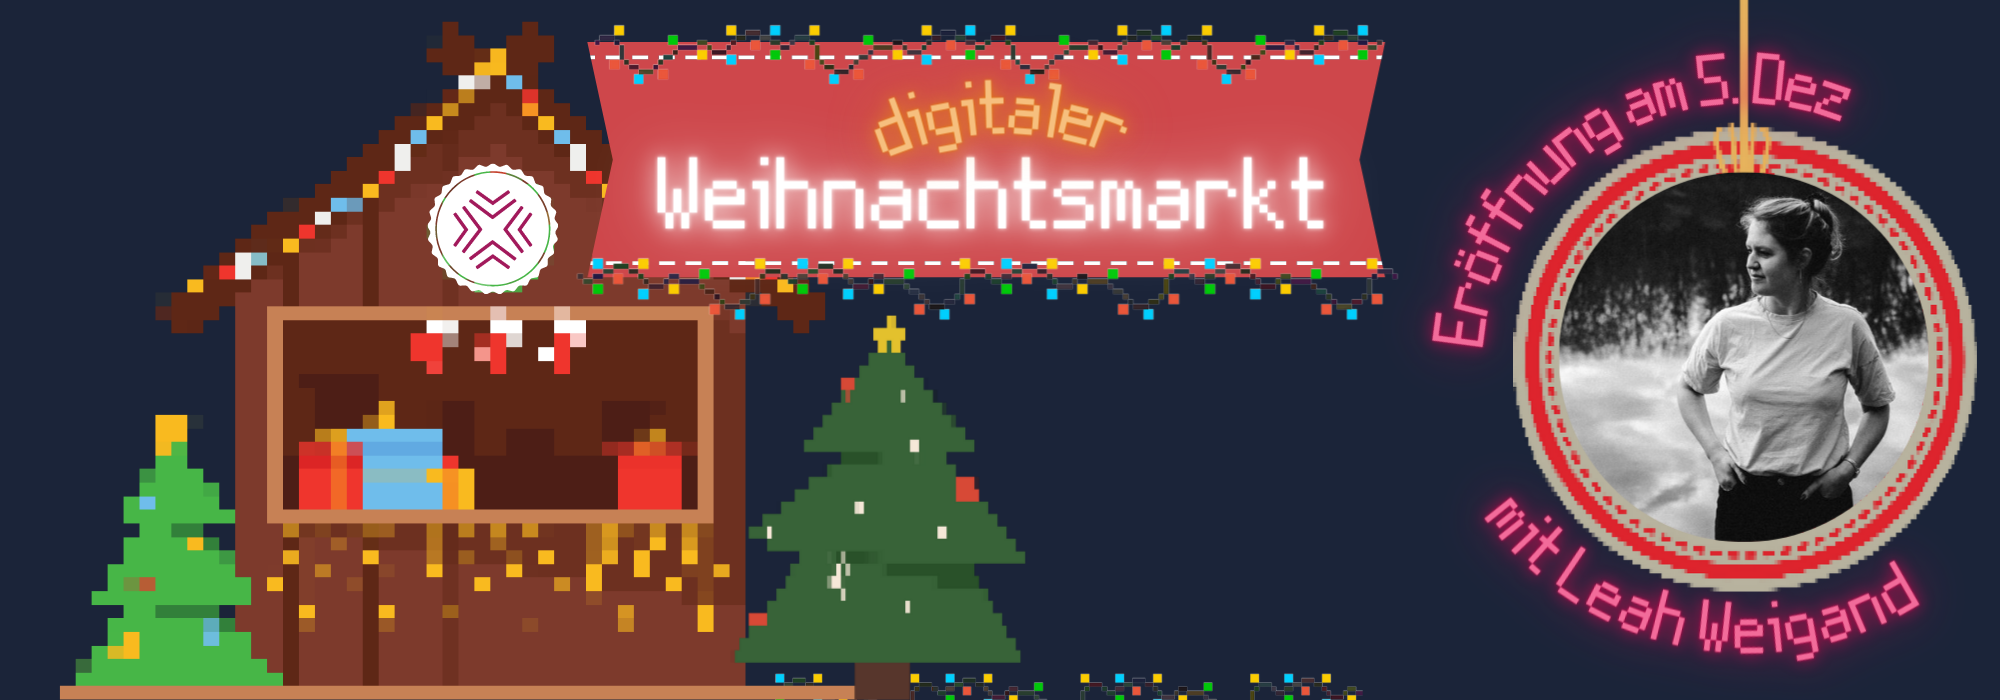 Templates digitaler Weihnachtsmarkt 2000 x 700 px1 - da_zwischen Weihnachtsmarkt auf Gather-Town